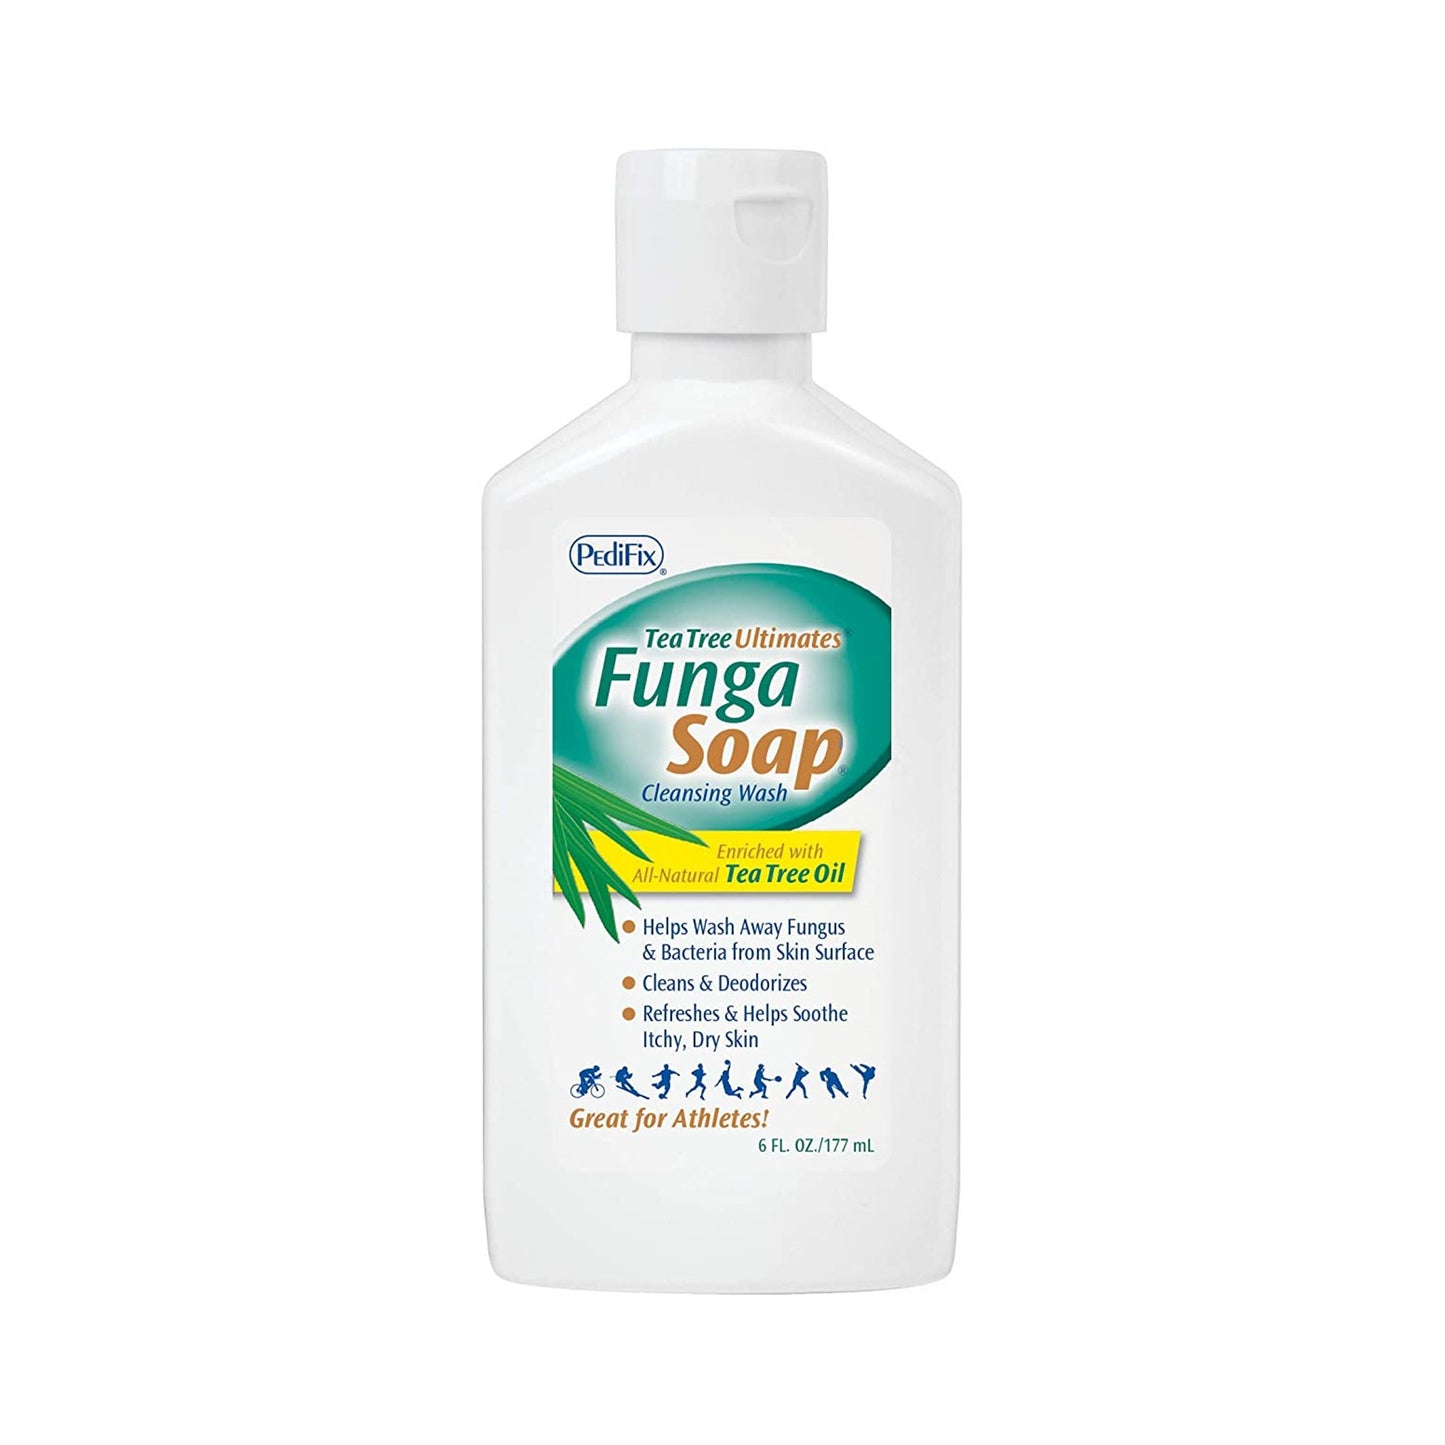 FungaSoap® Soap